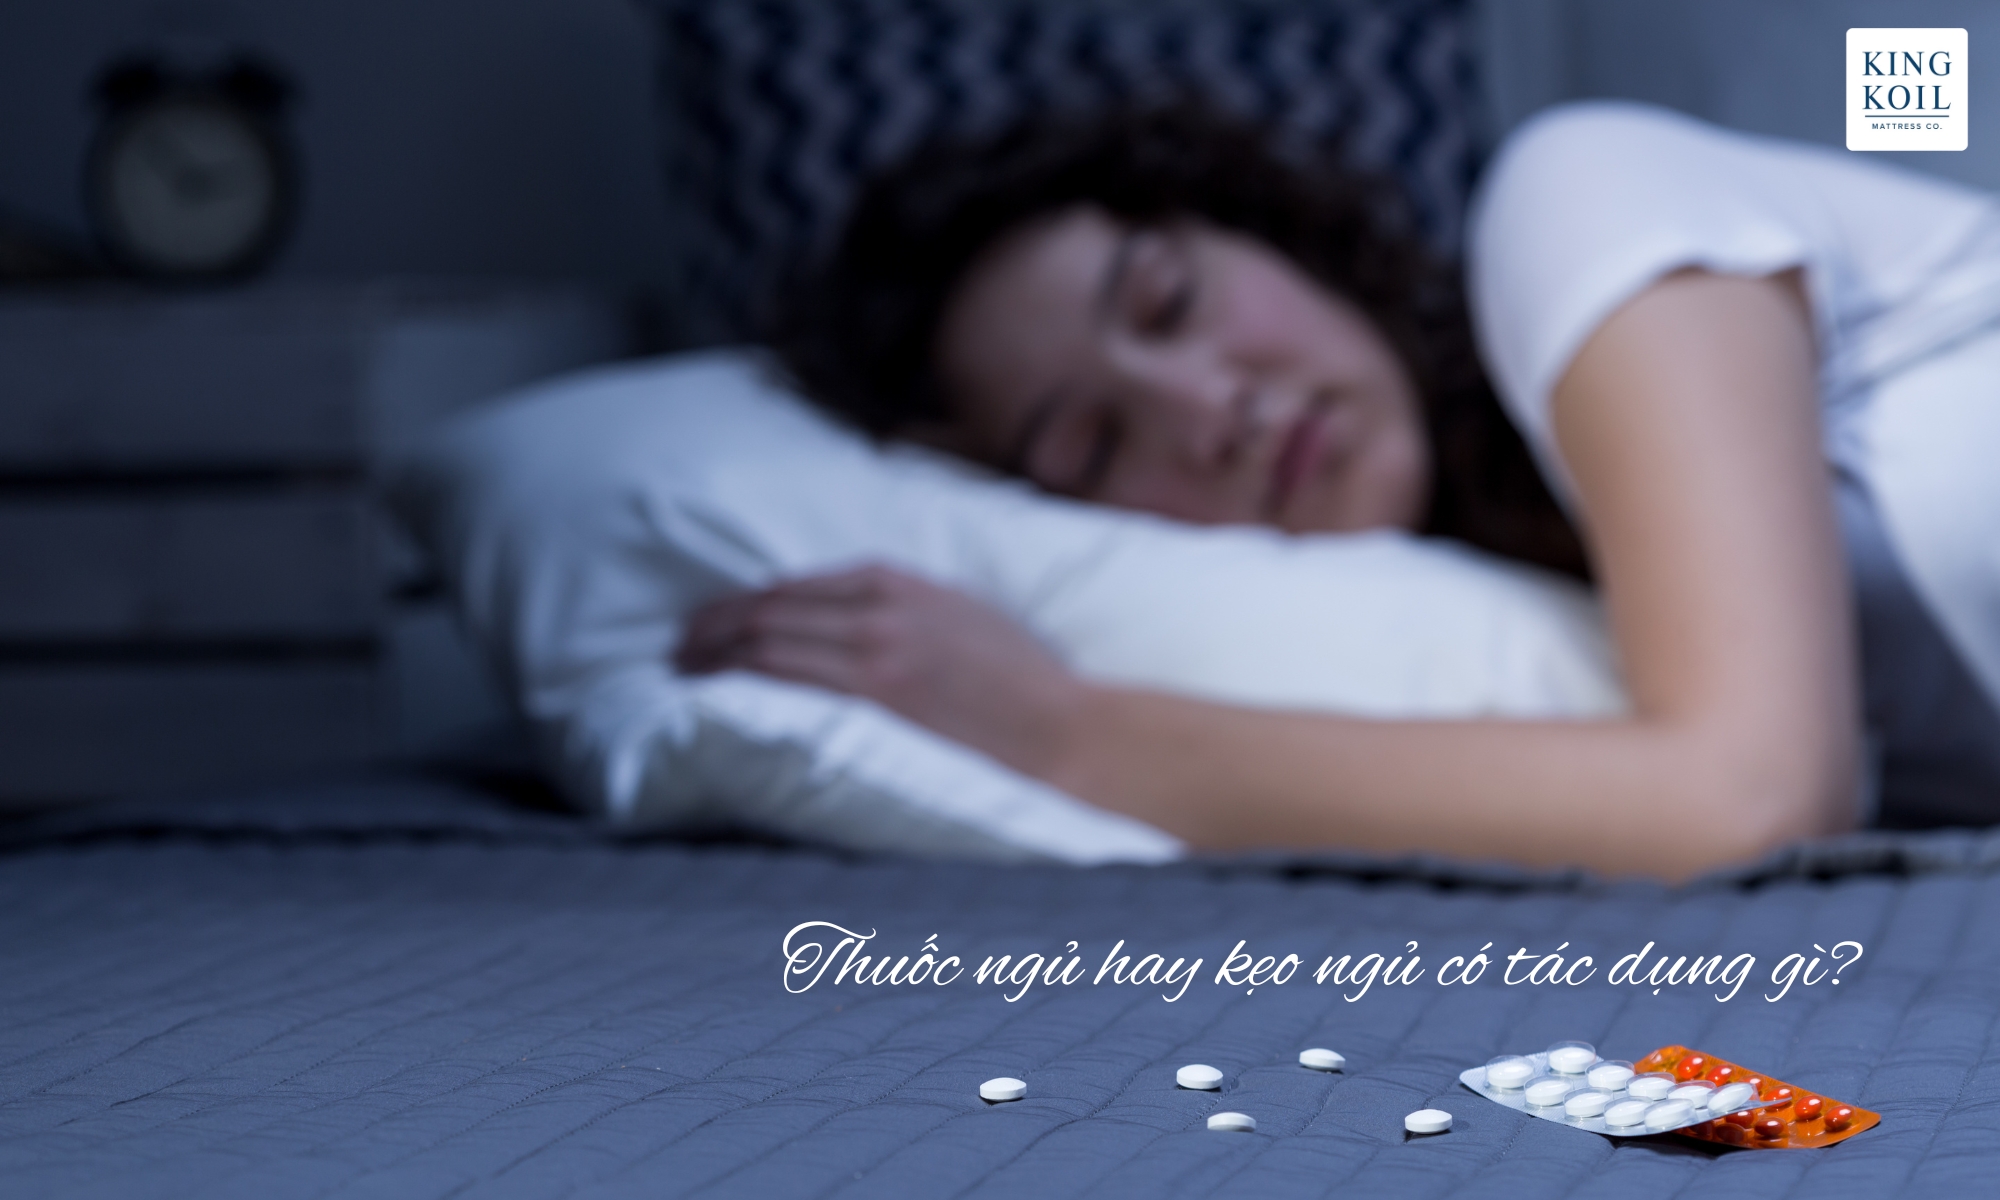 Thuốc ngủ hay kẹo ngủ có tác dụng gì?